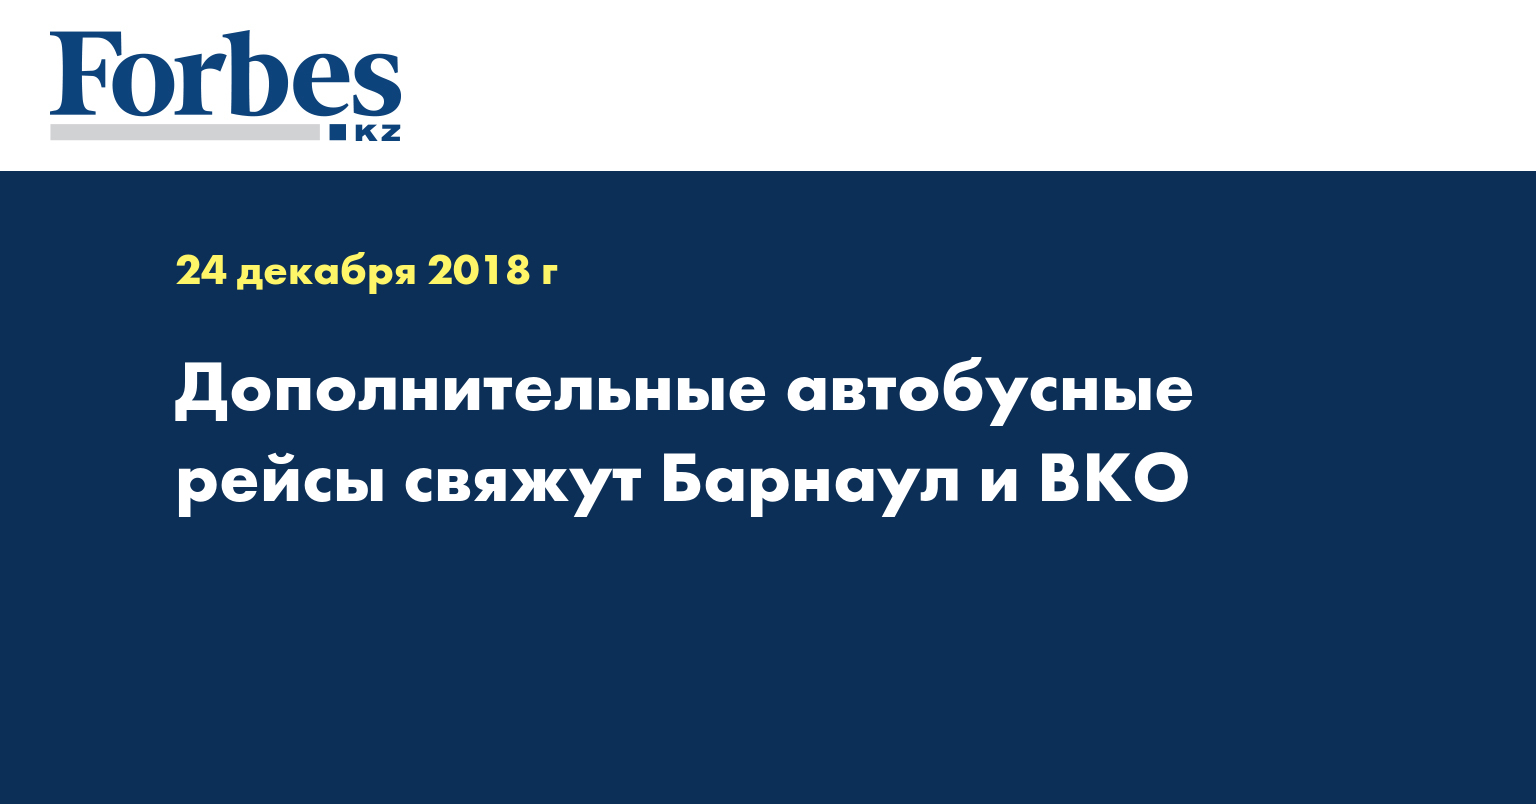 Дополнительные автобусные рейсы свяжут Барнаул и ВКО